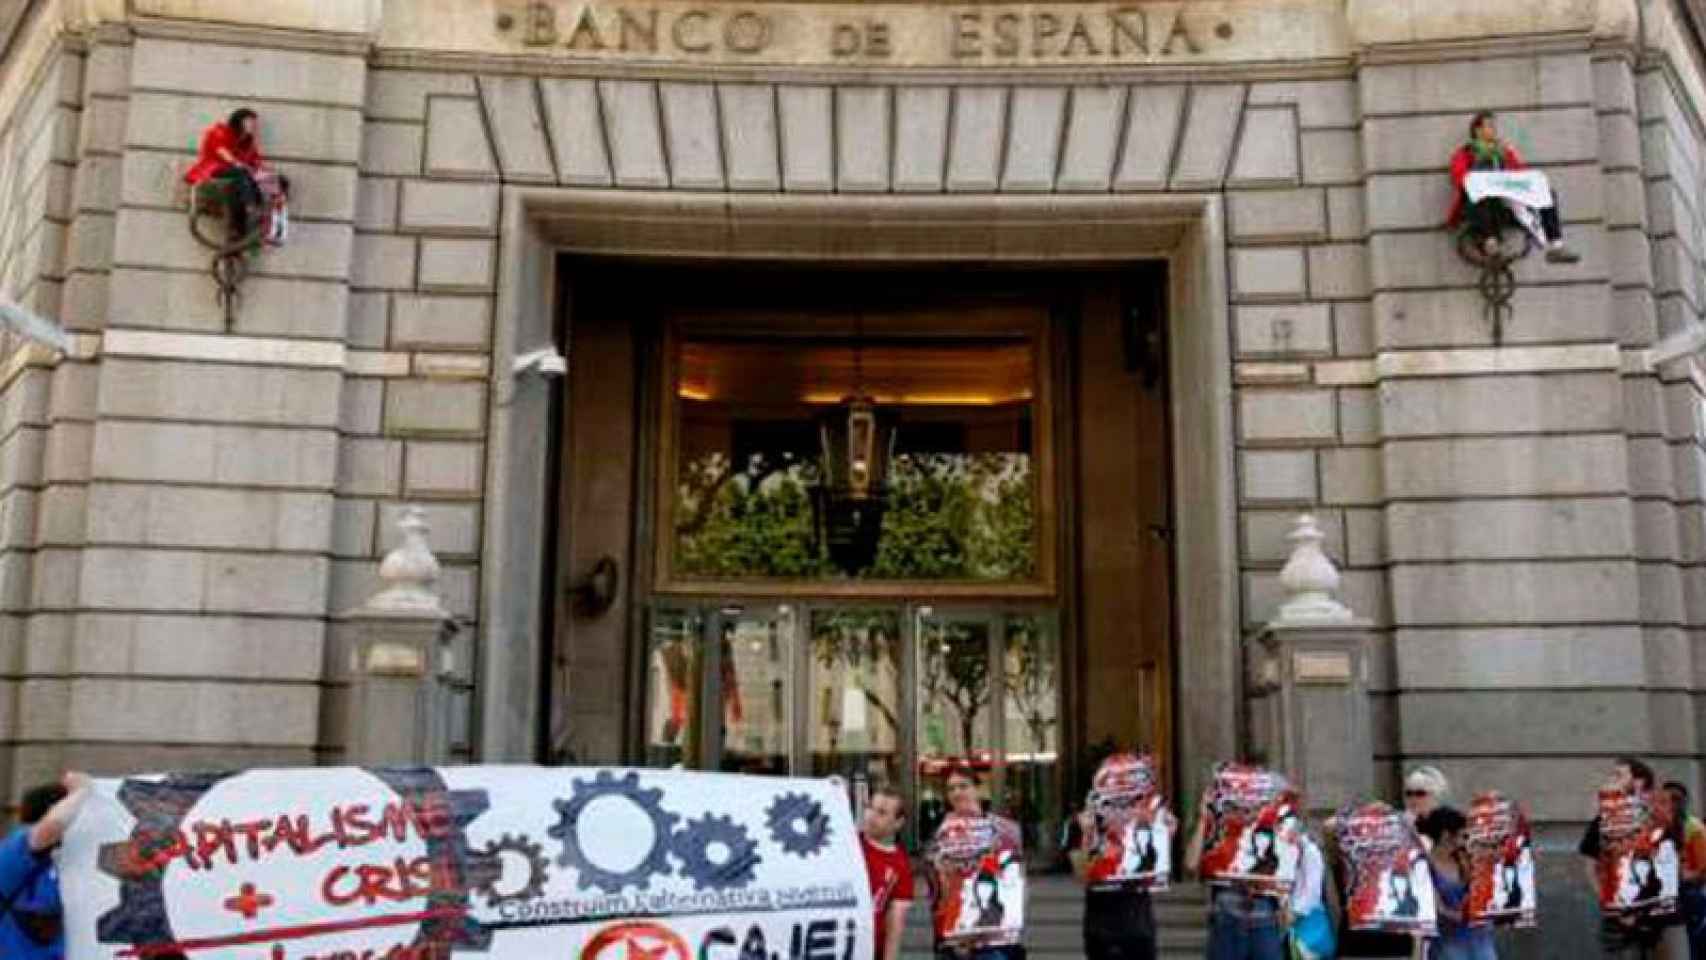 La sede del Banco de España en Barcelona durante una protesta antisistema / EFE